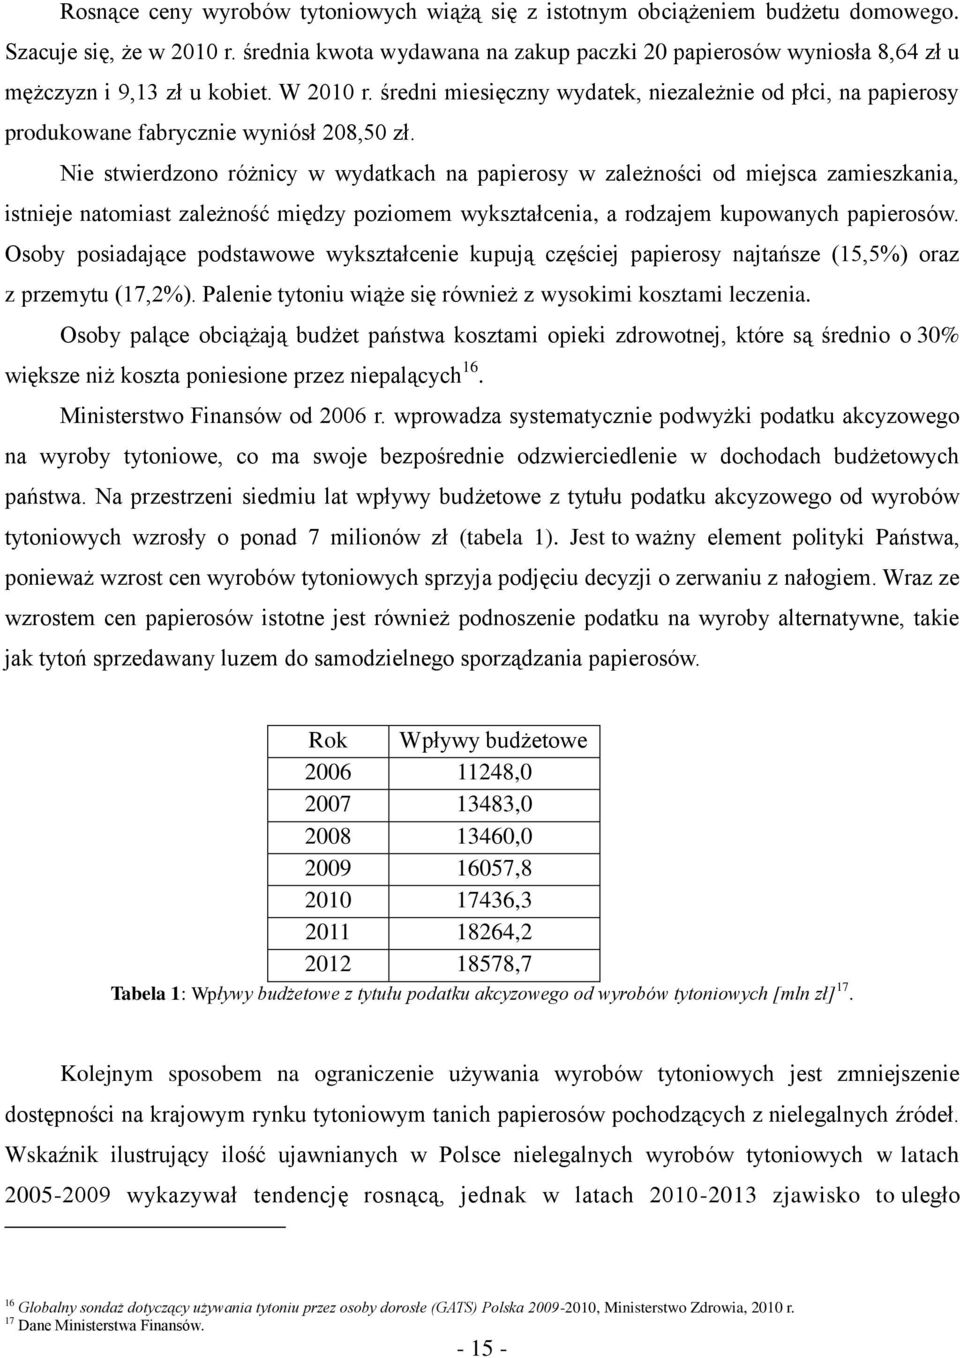 średni miesięczny wydatek, niezależnie od płci, na papierosy produkowane fabrycznie wyniósł 208,50 zł.